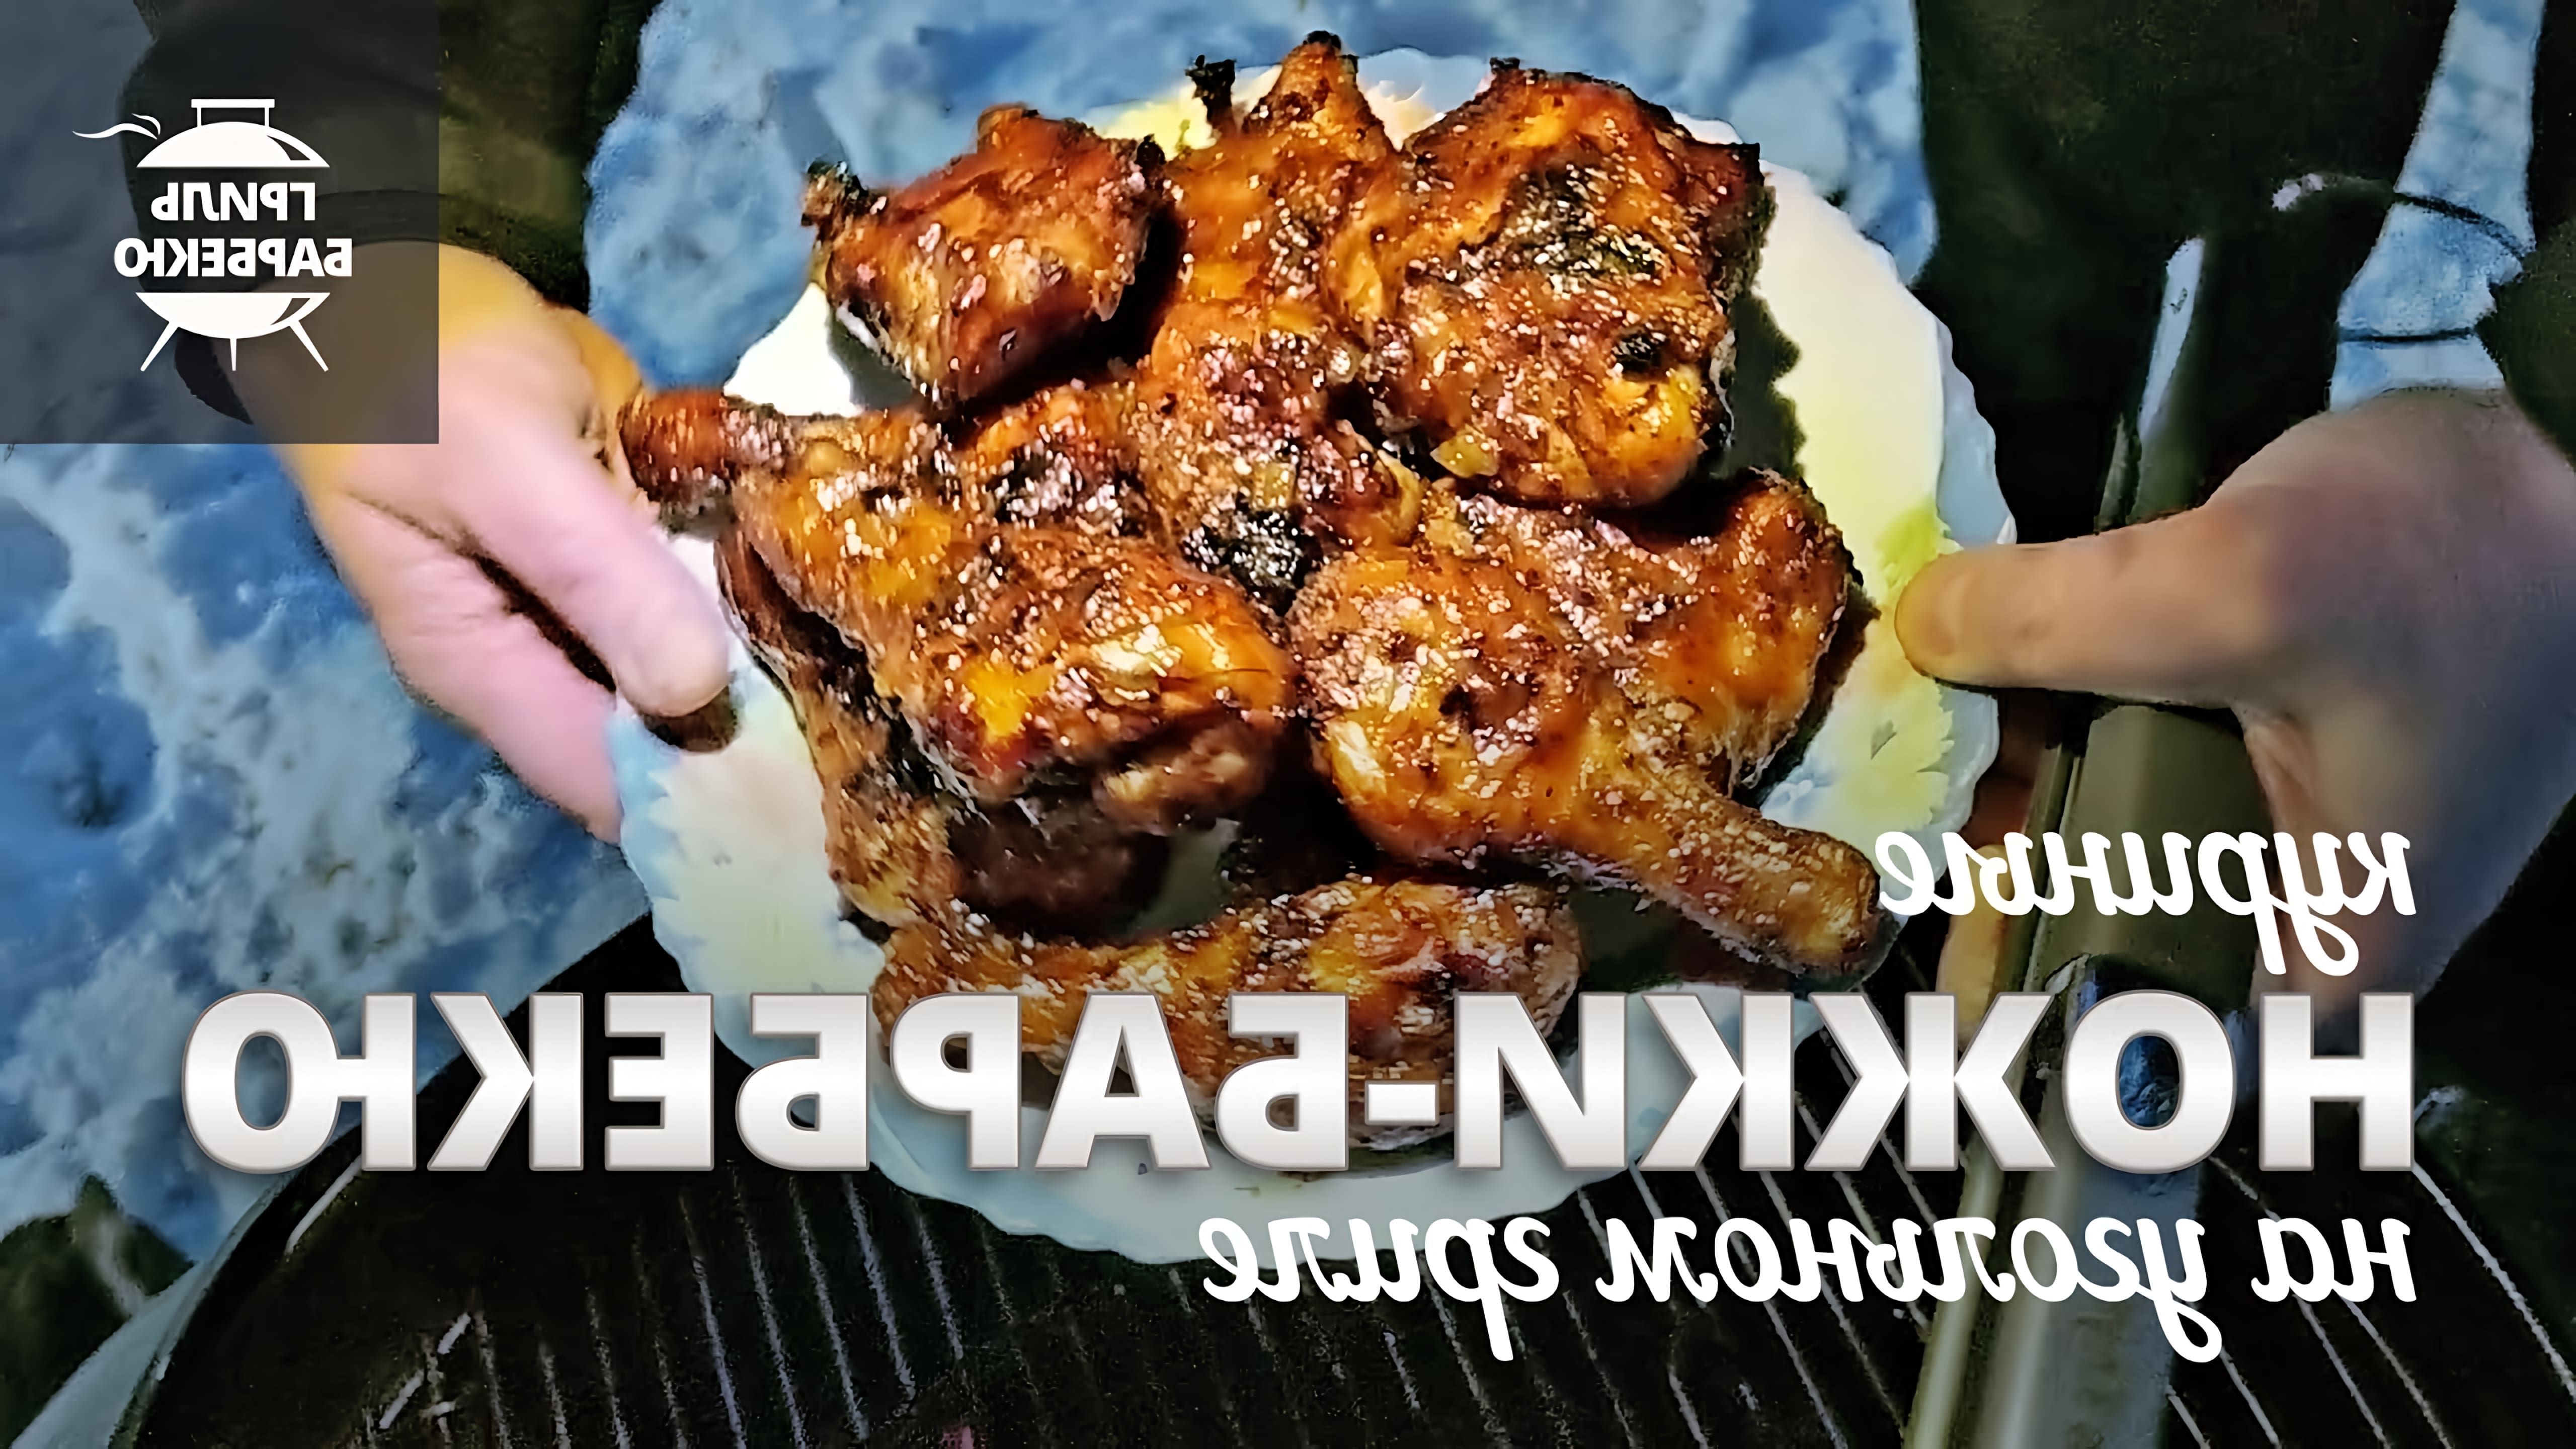 В этом видео демонстрируется рецепт приготовления куриных ножек барбекю на угольном гриле